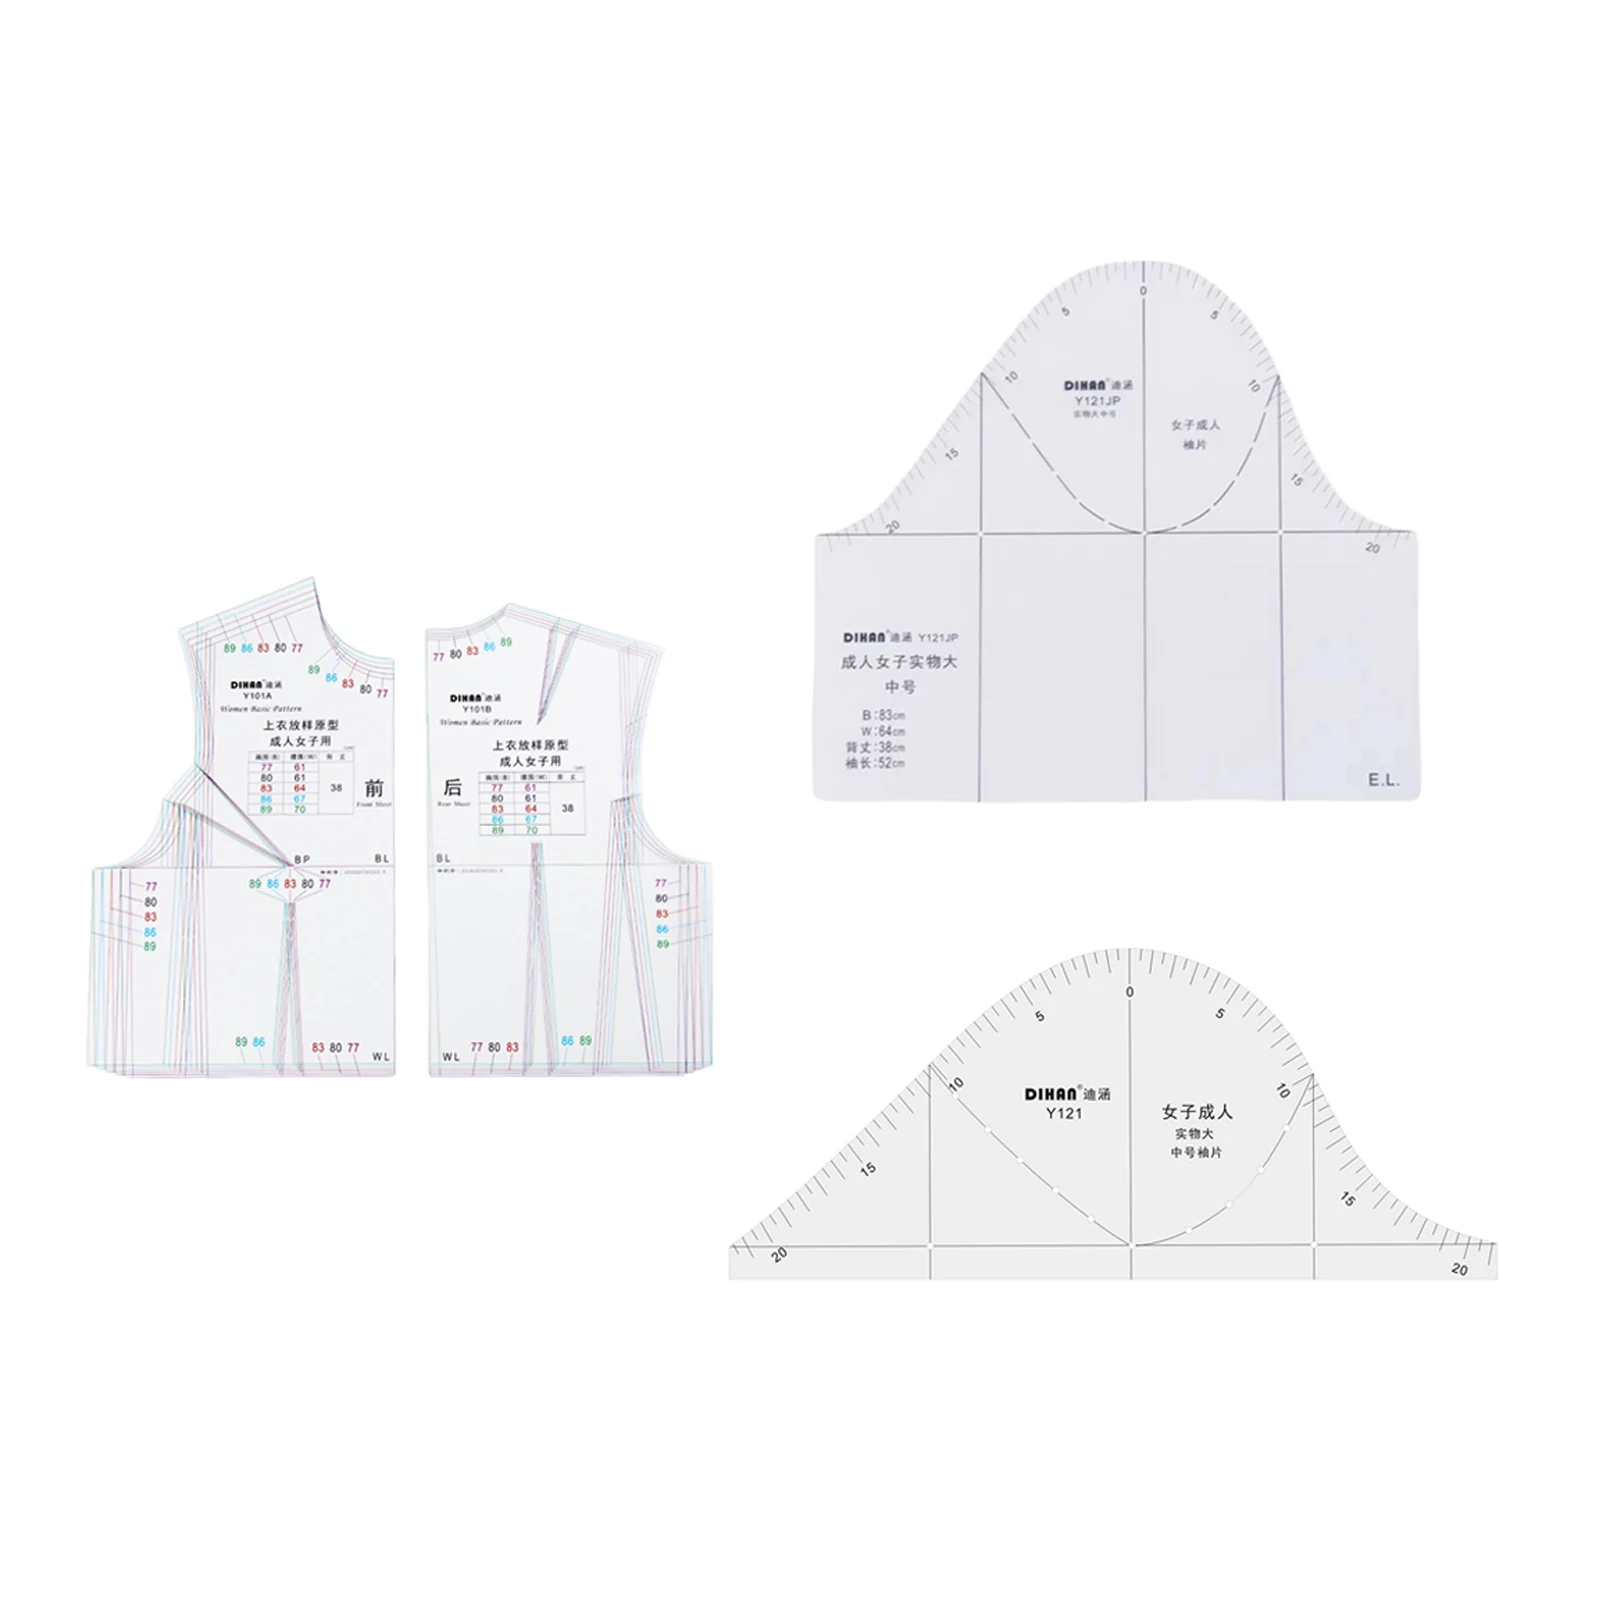 DIY 1:1 Cloth Design Ruler Drafting Full Scale Drawing Templete Model Tool